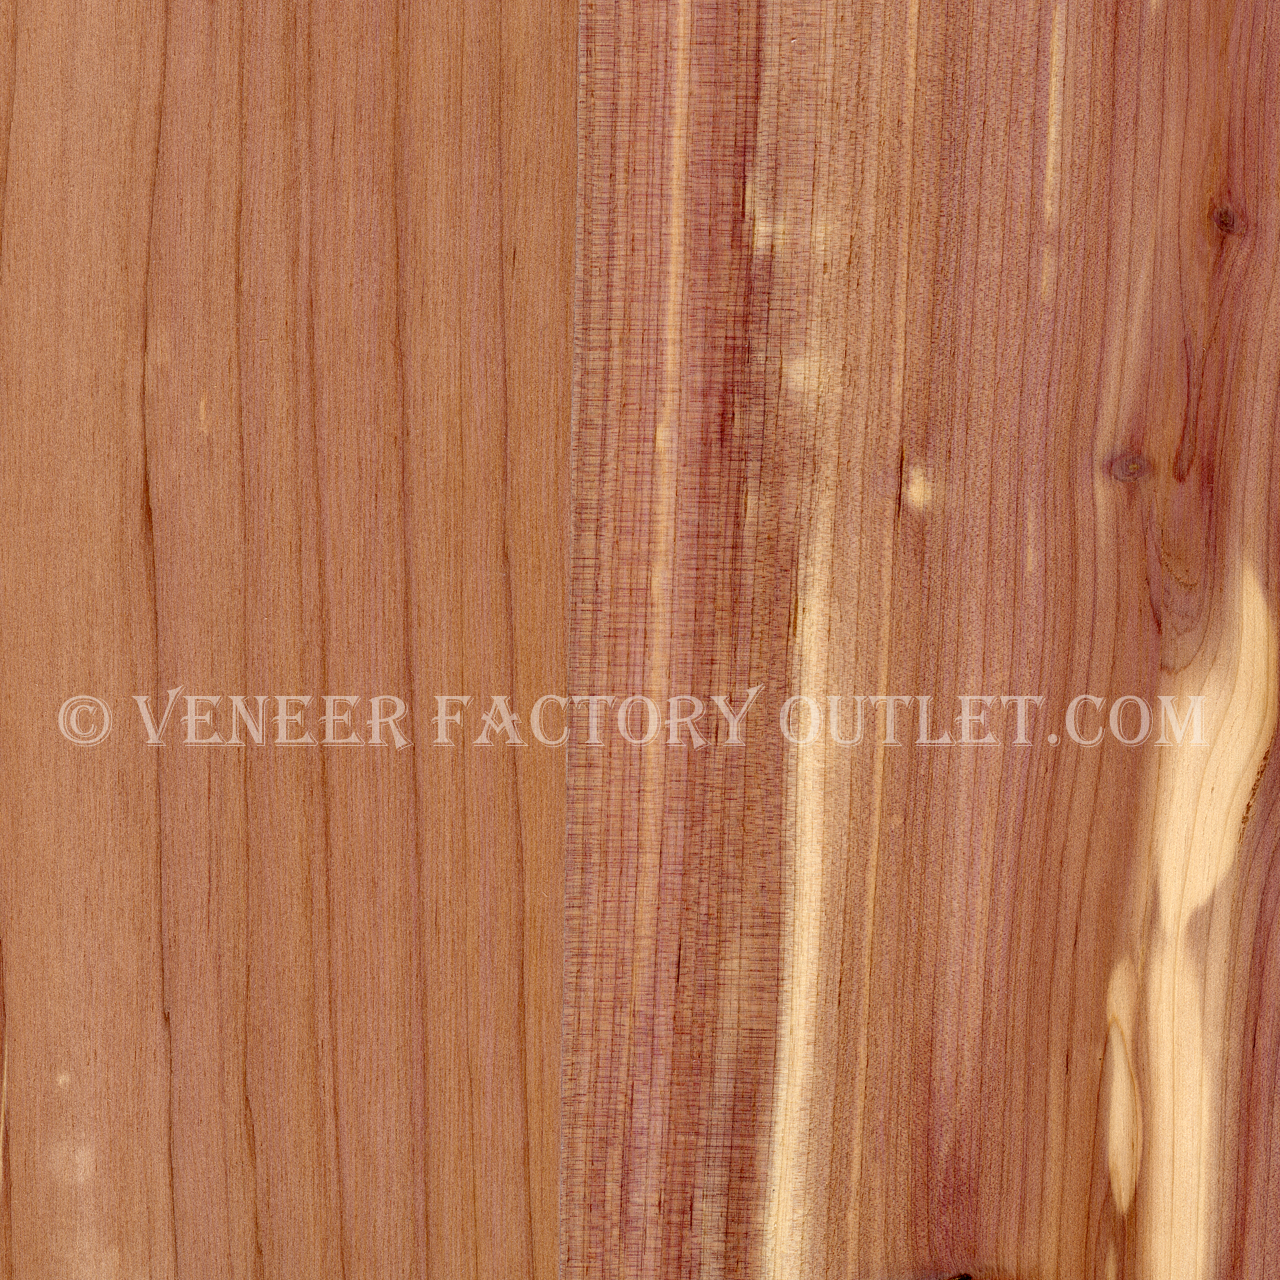 Standard Wood Veneer Edging